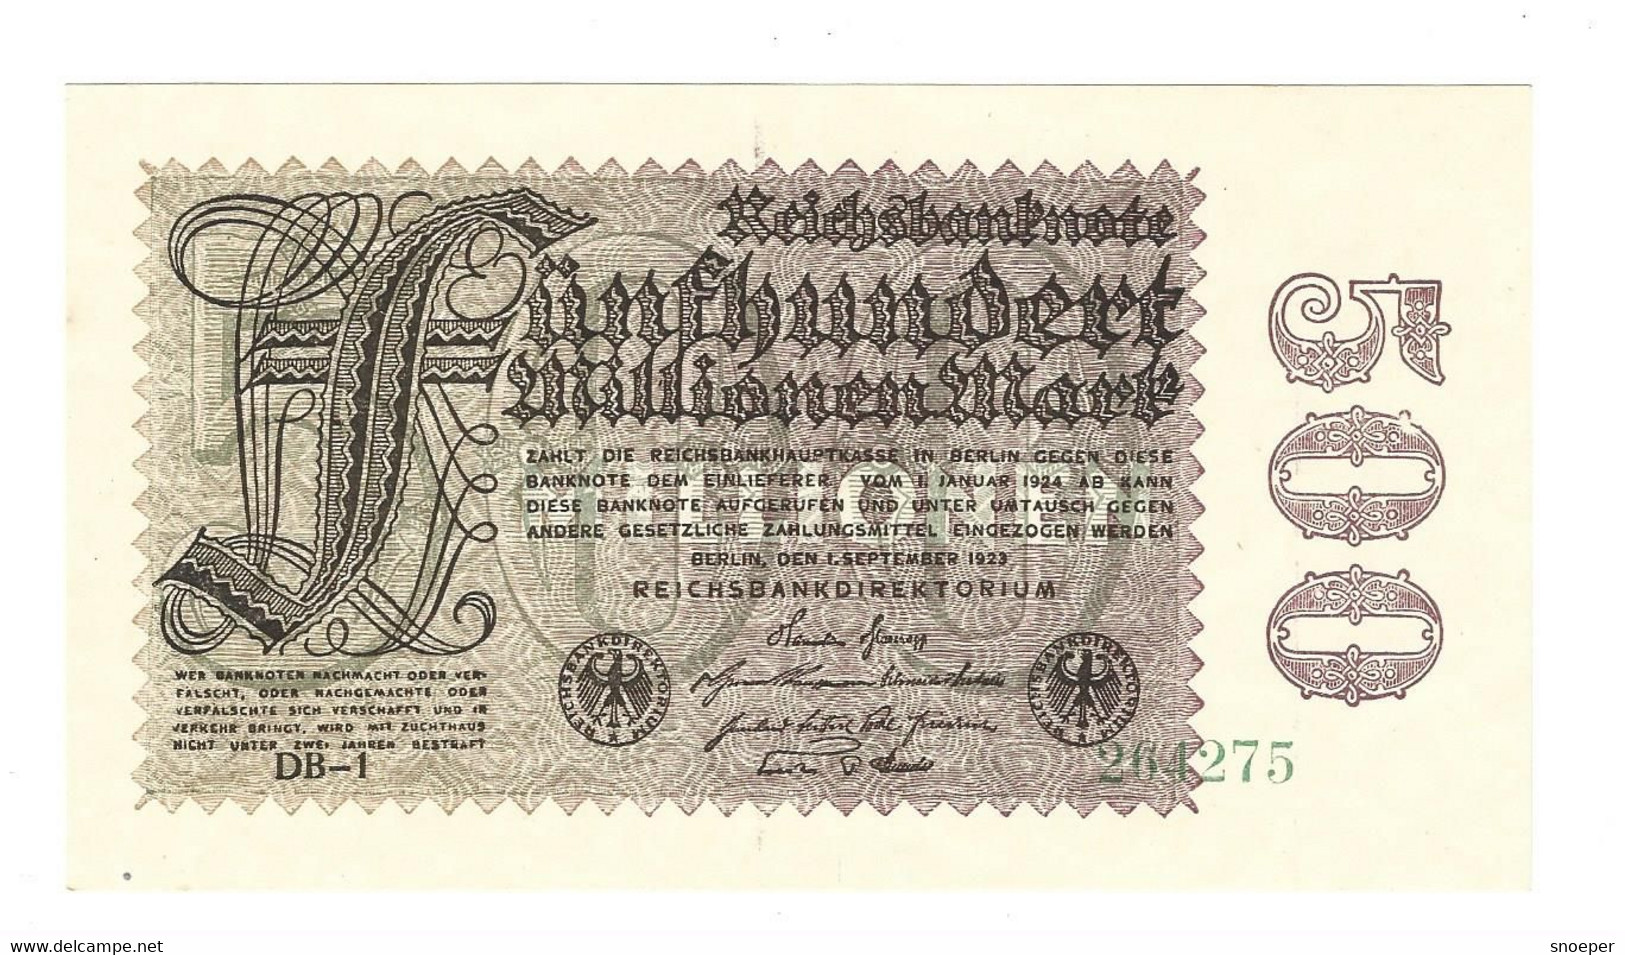 *berlin 500 Millionen  Mark  1/9/1923  110f  Unc - 500 Millionen Mark